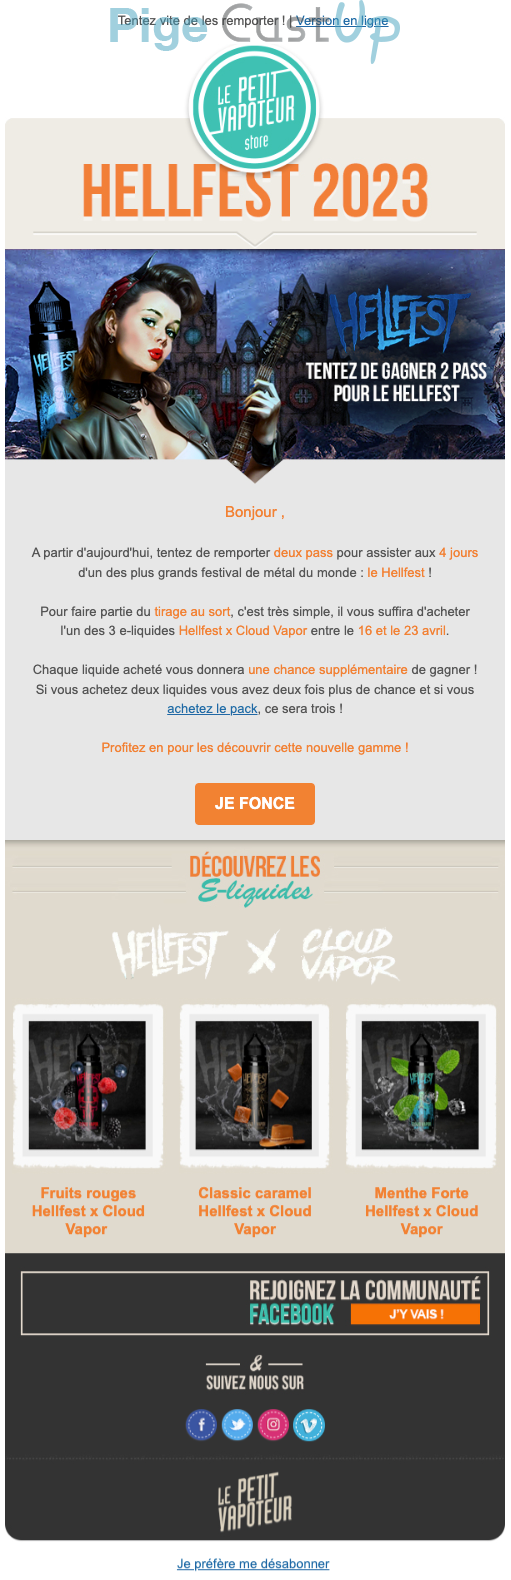 Exemple de Type de media  e-mailing - Le Petit Vapoteur - Marketing Acquisition - Jeu promo